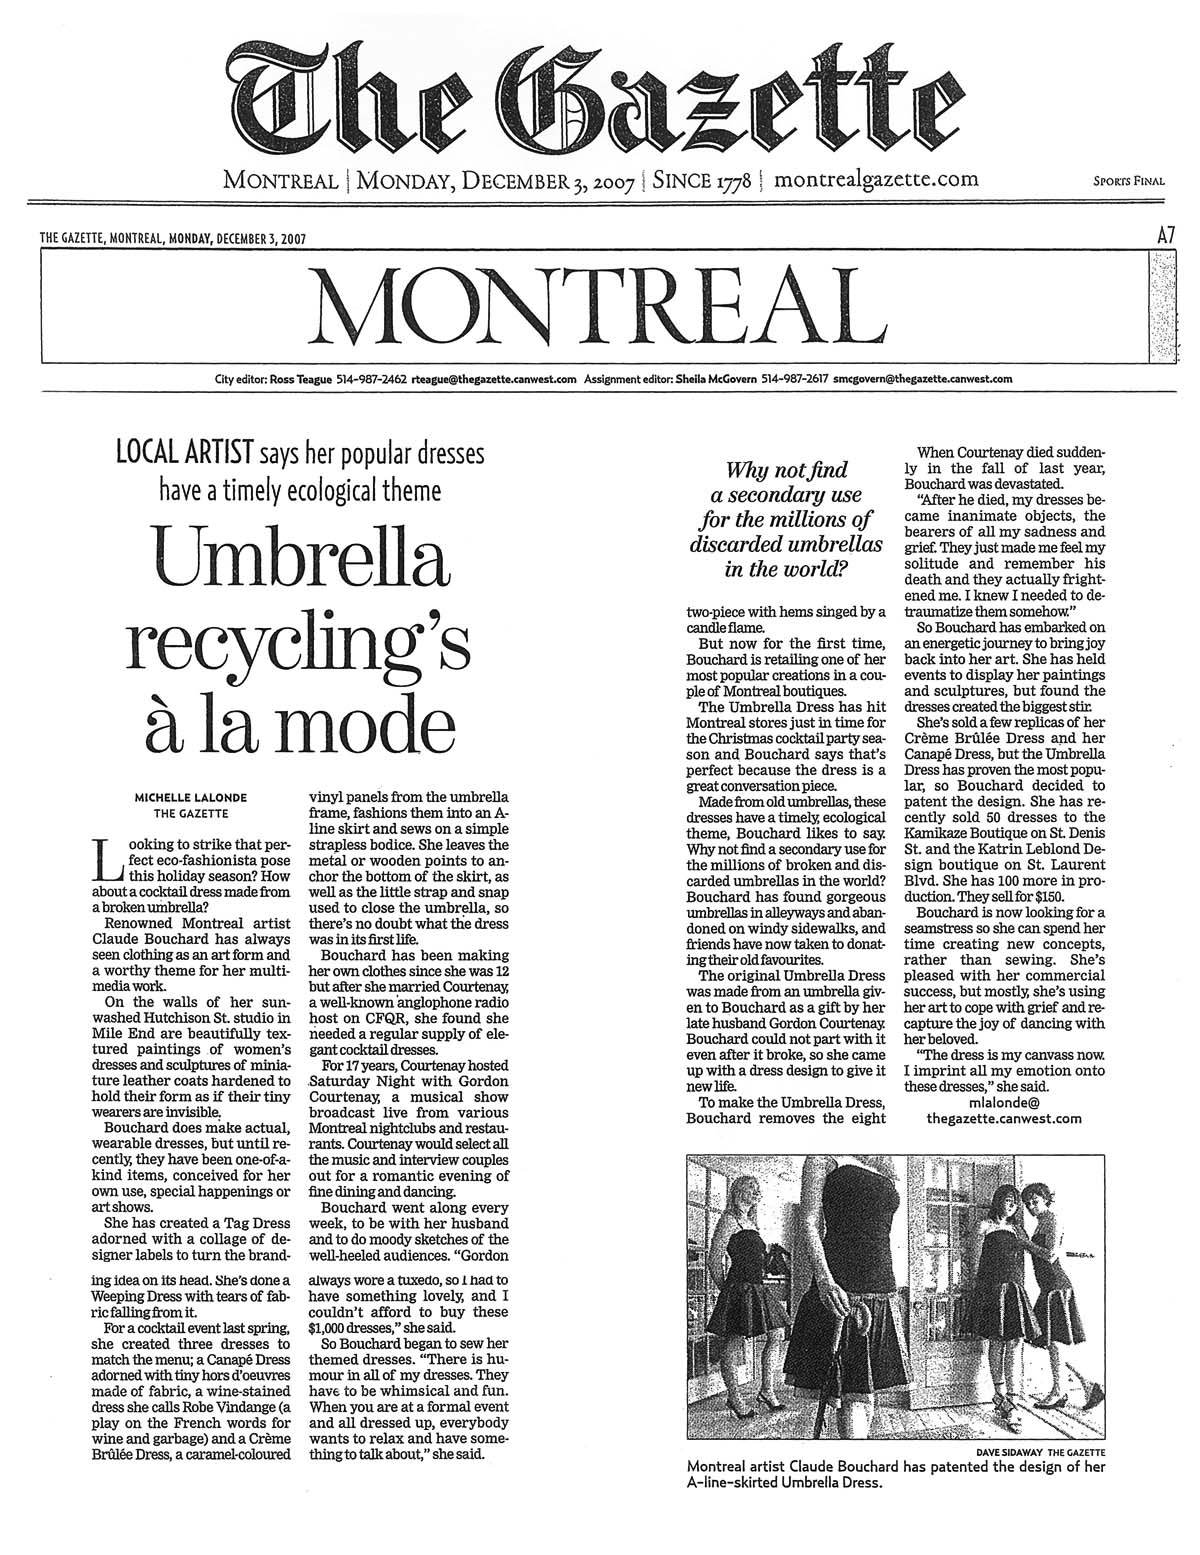 2007 The Gazette, Cahier A, « Umbrella recycling's à la mode » Michèle Lalonde